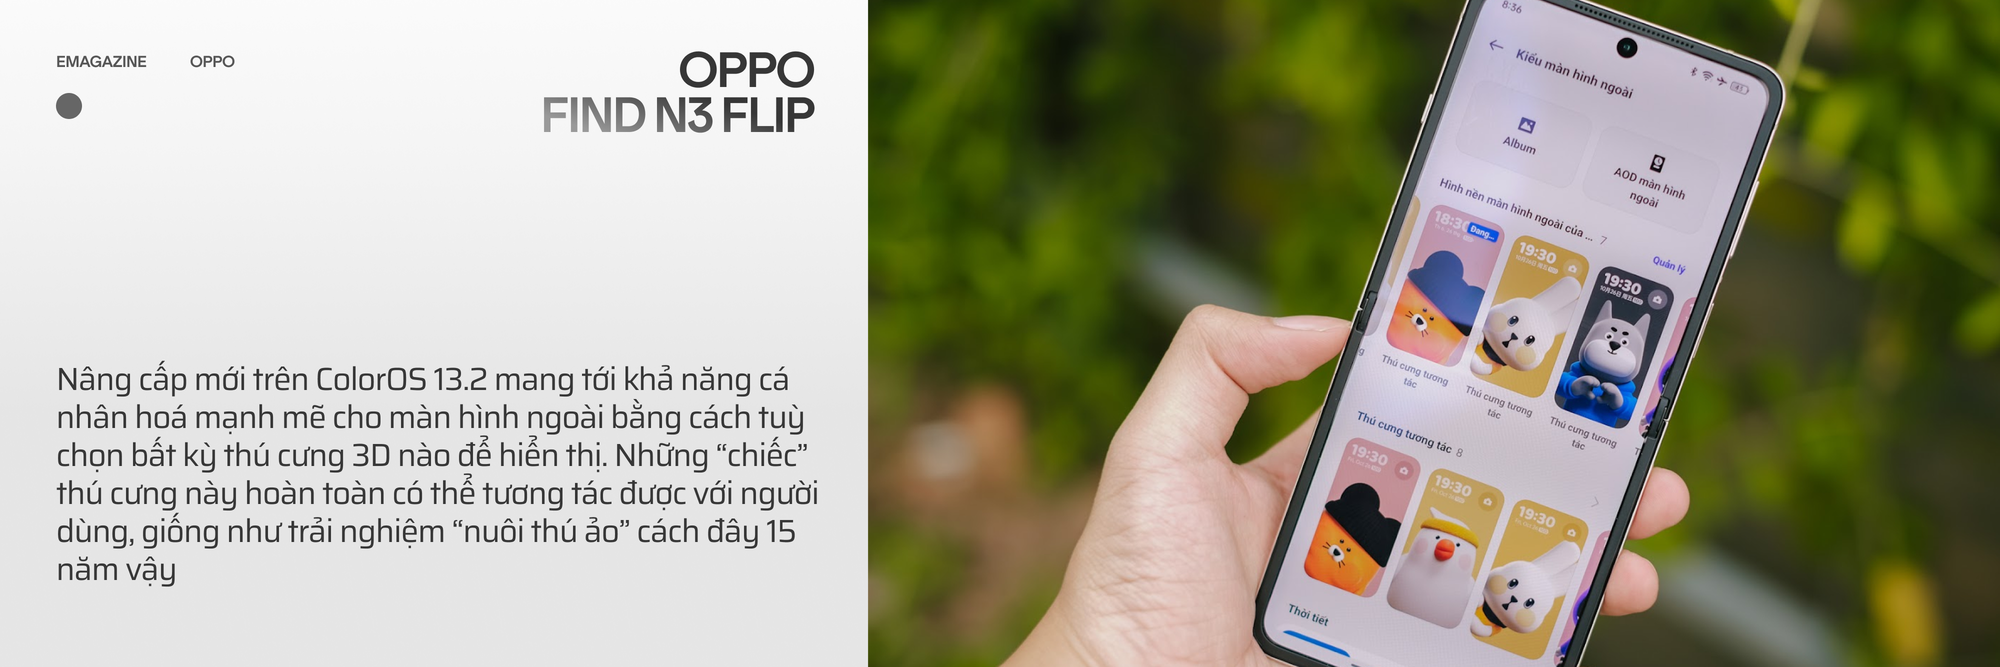 OPPO Find N3 Flip và hành trình đi tìm chiếc smartphone gập toàn diện - Ảnh 11.